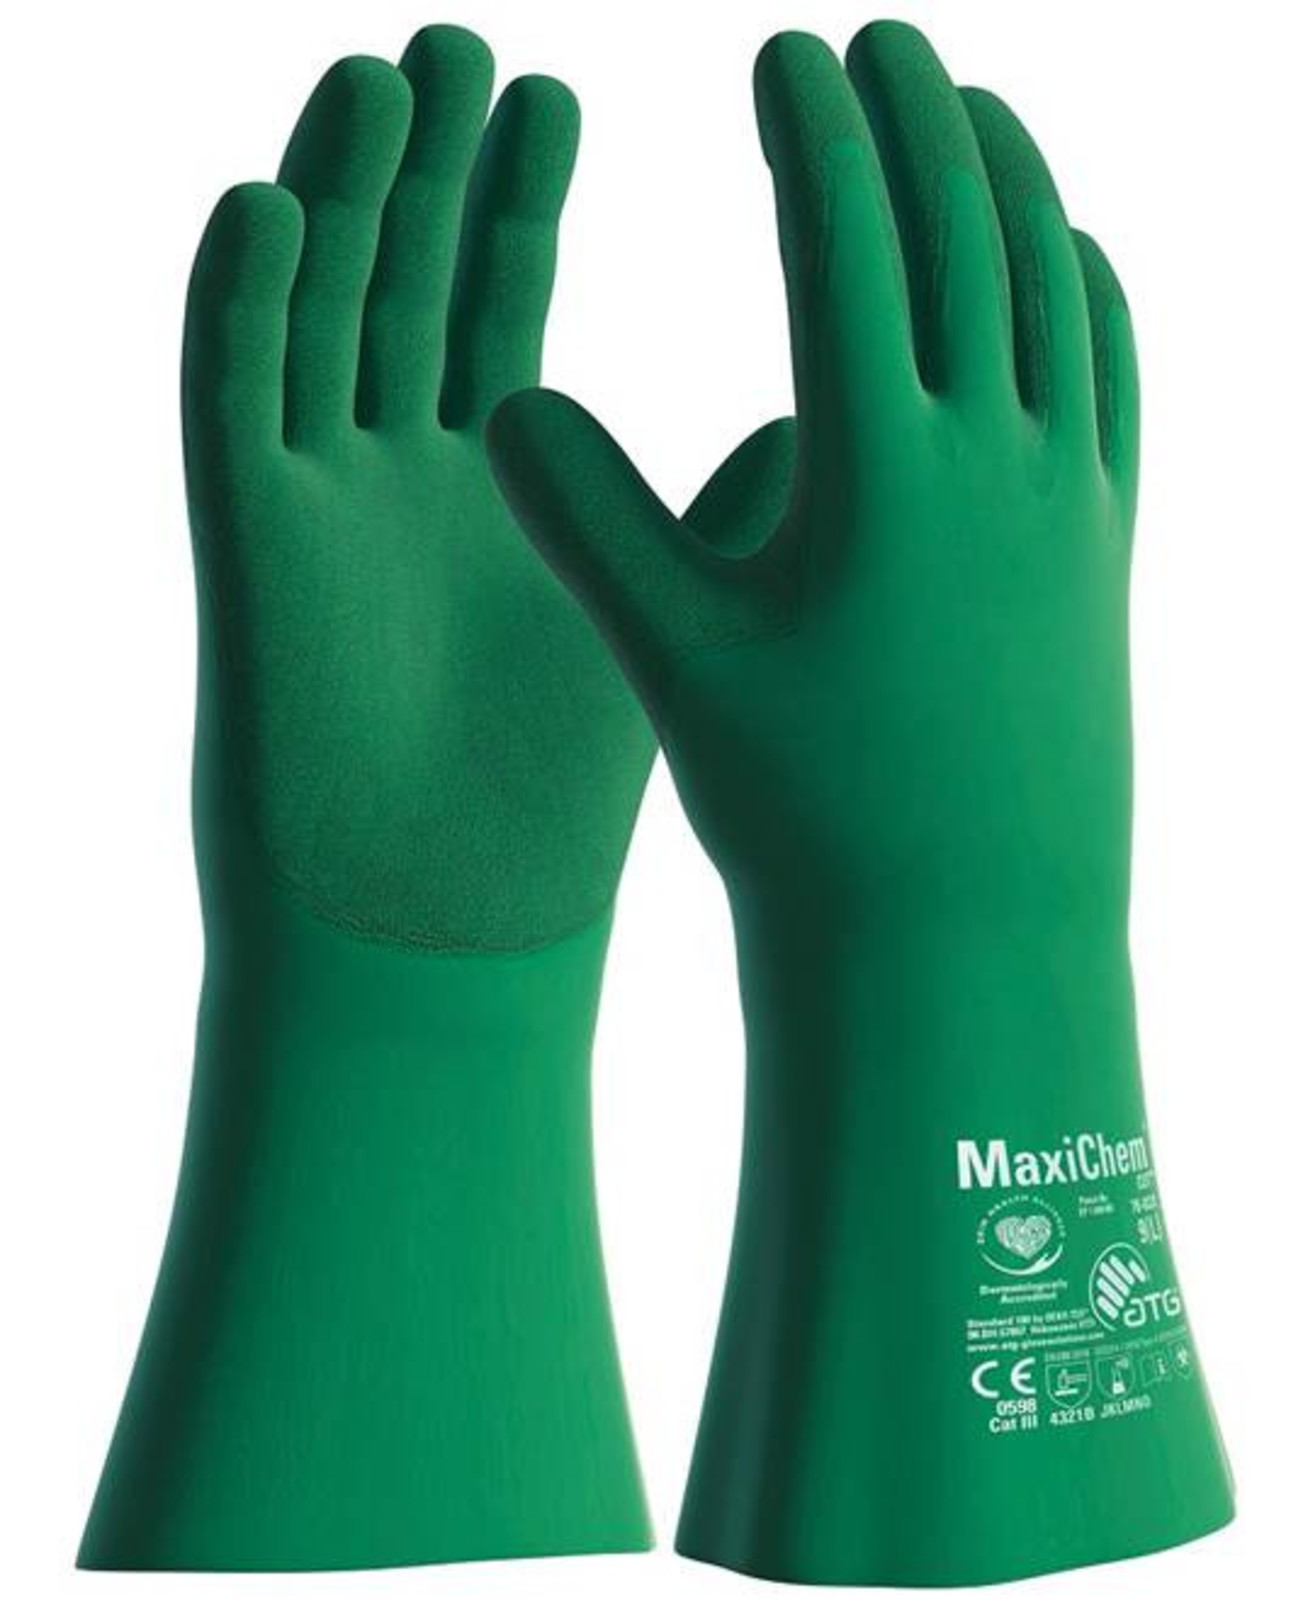 Protichemické rukavice ATG MaxiChem Cut  76-833 s TRItech - veľkosť: 8/M, farba: zelená